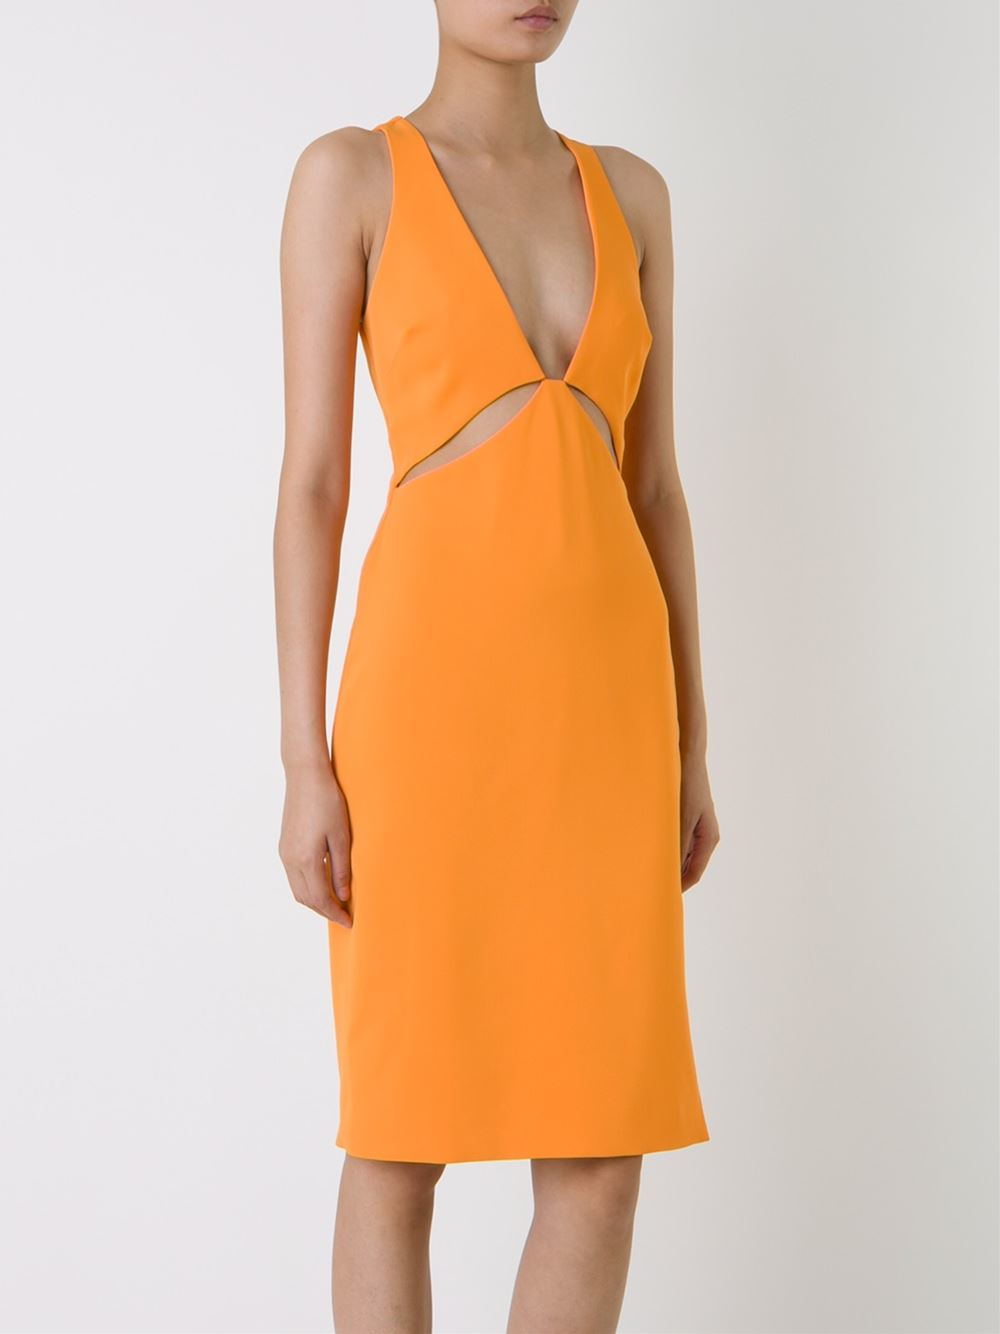 dion lee orange dress